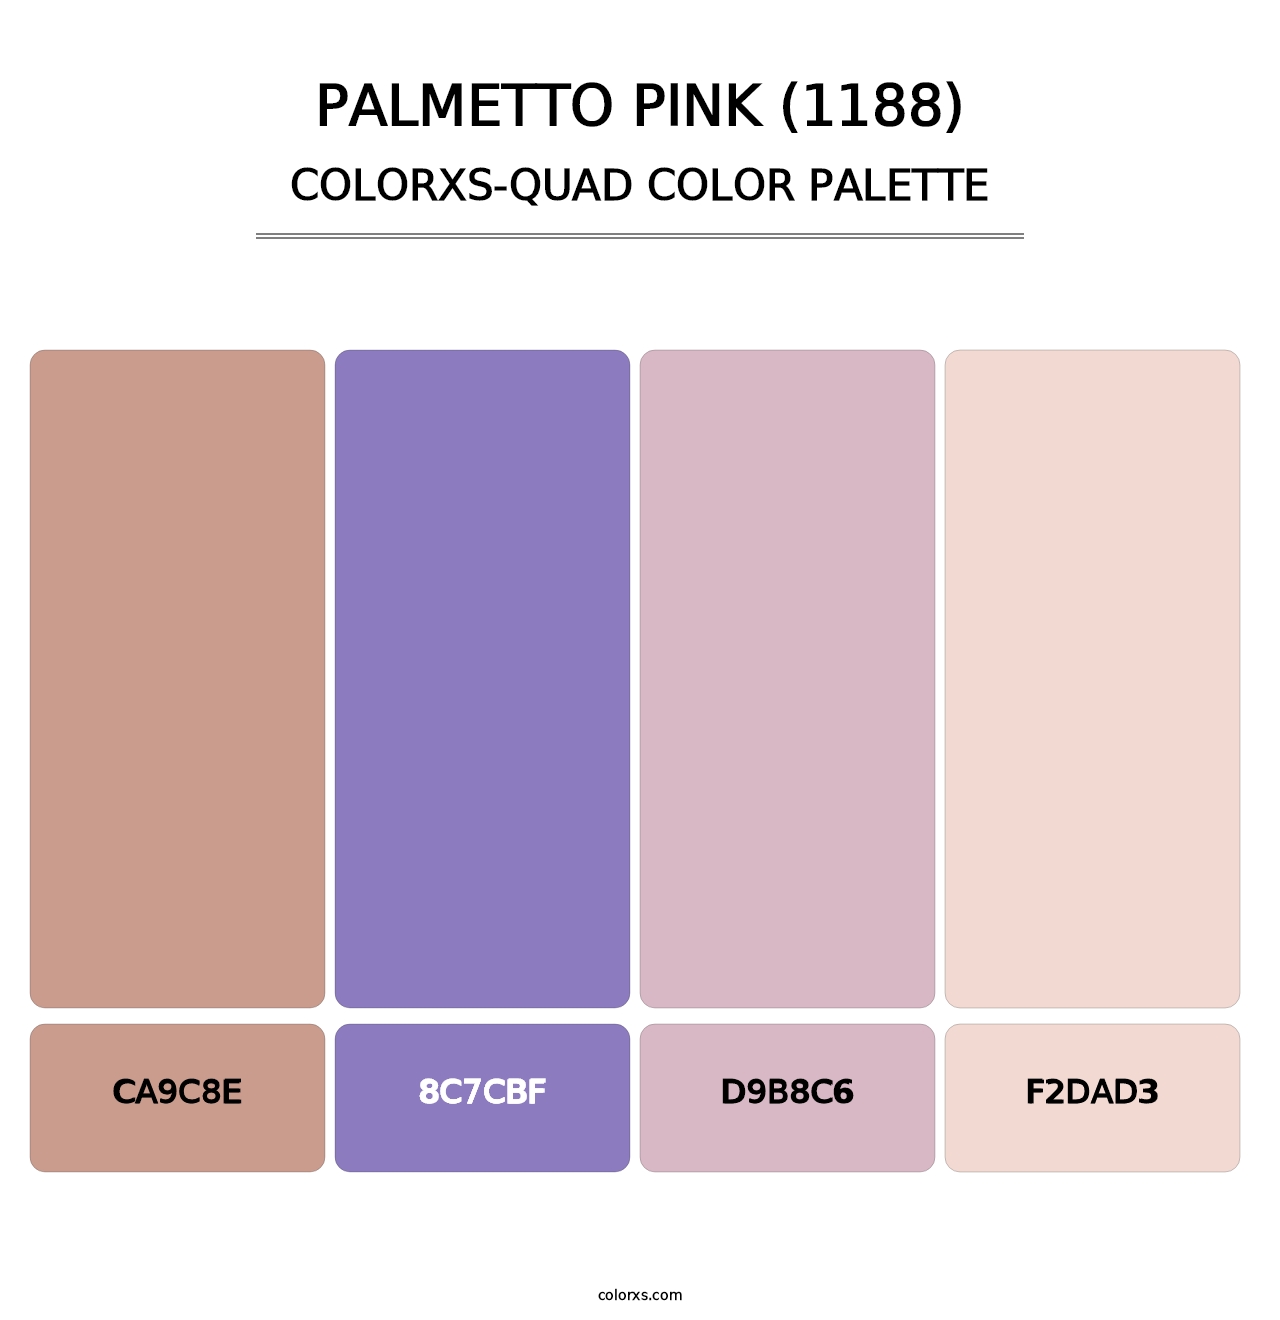 Palmetto Pink (1188) - Colorxs Quad Palette